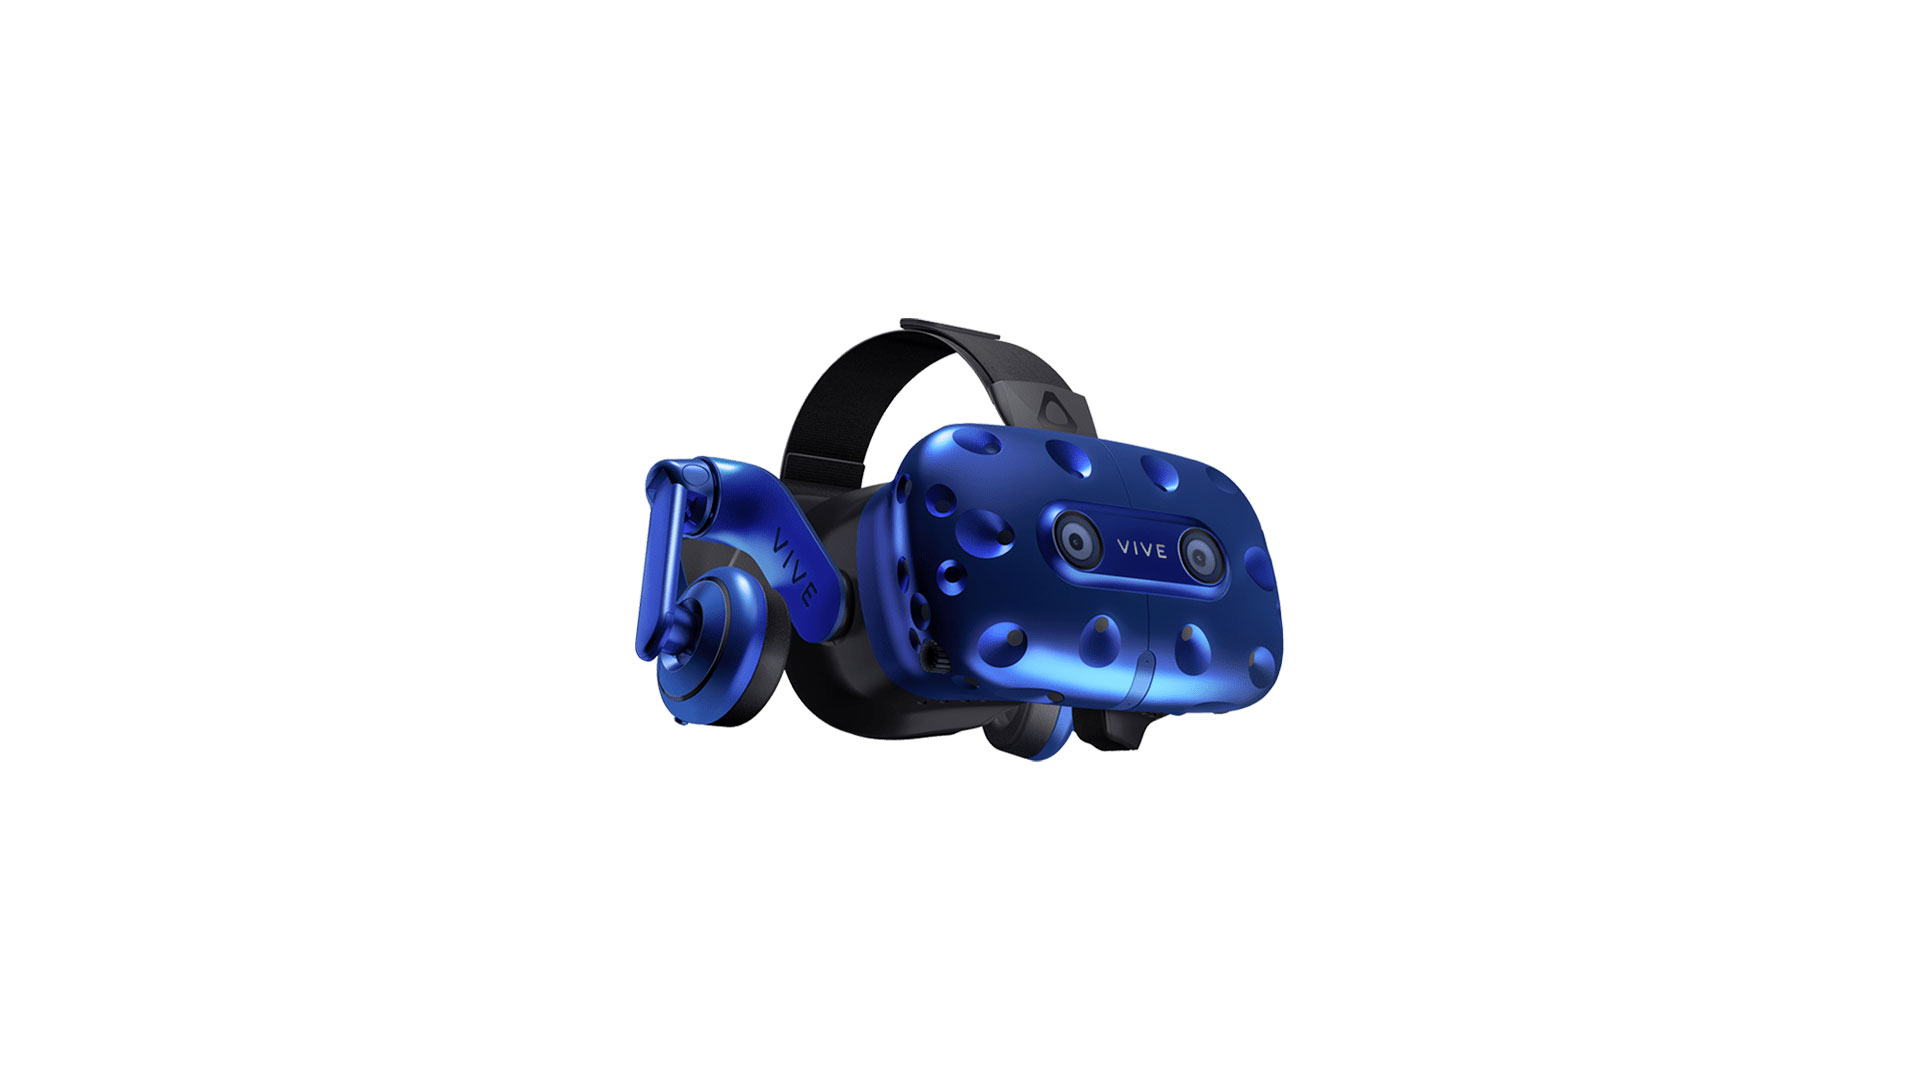 PS VR, HTC Vive Pro, Oculus Go, Oculus Rift : le guide ultime des casques  VR - Numerama